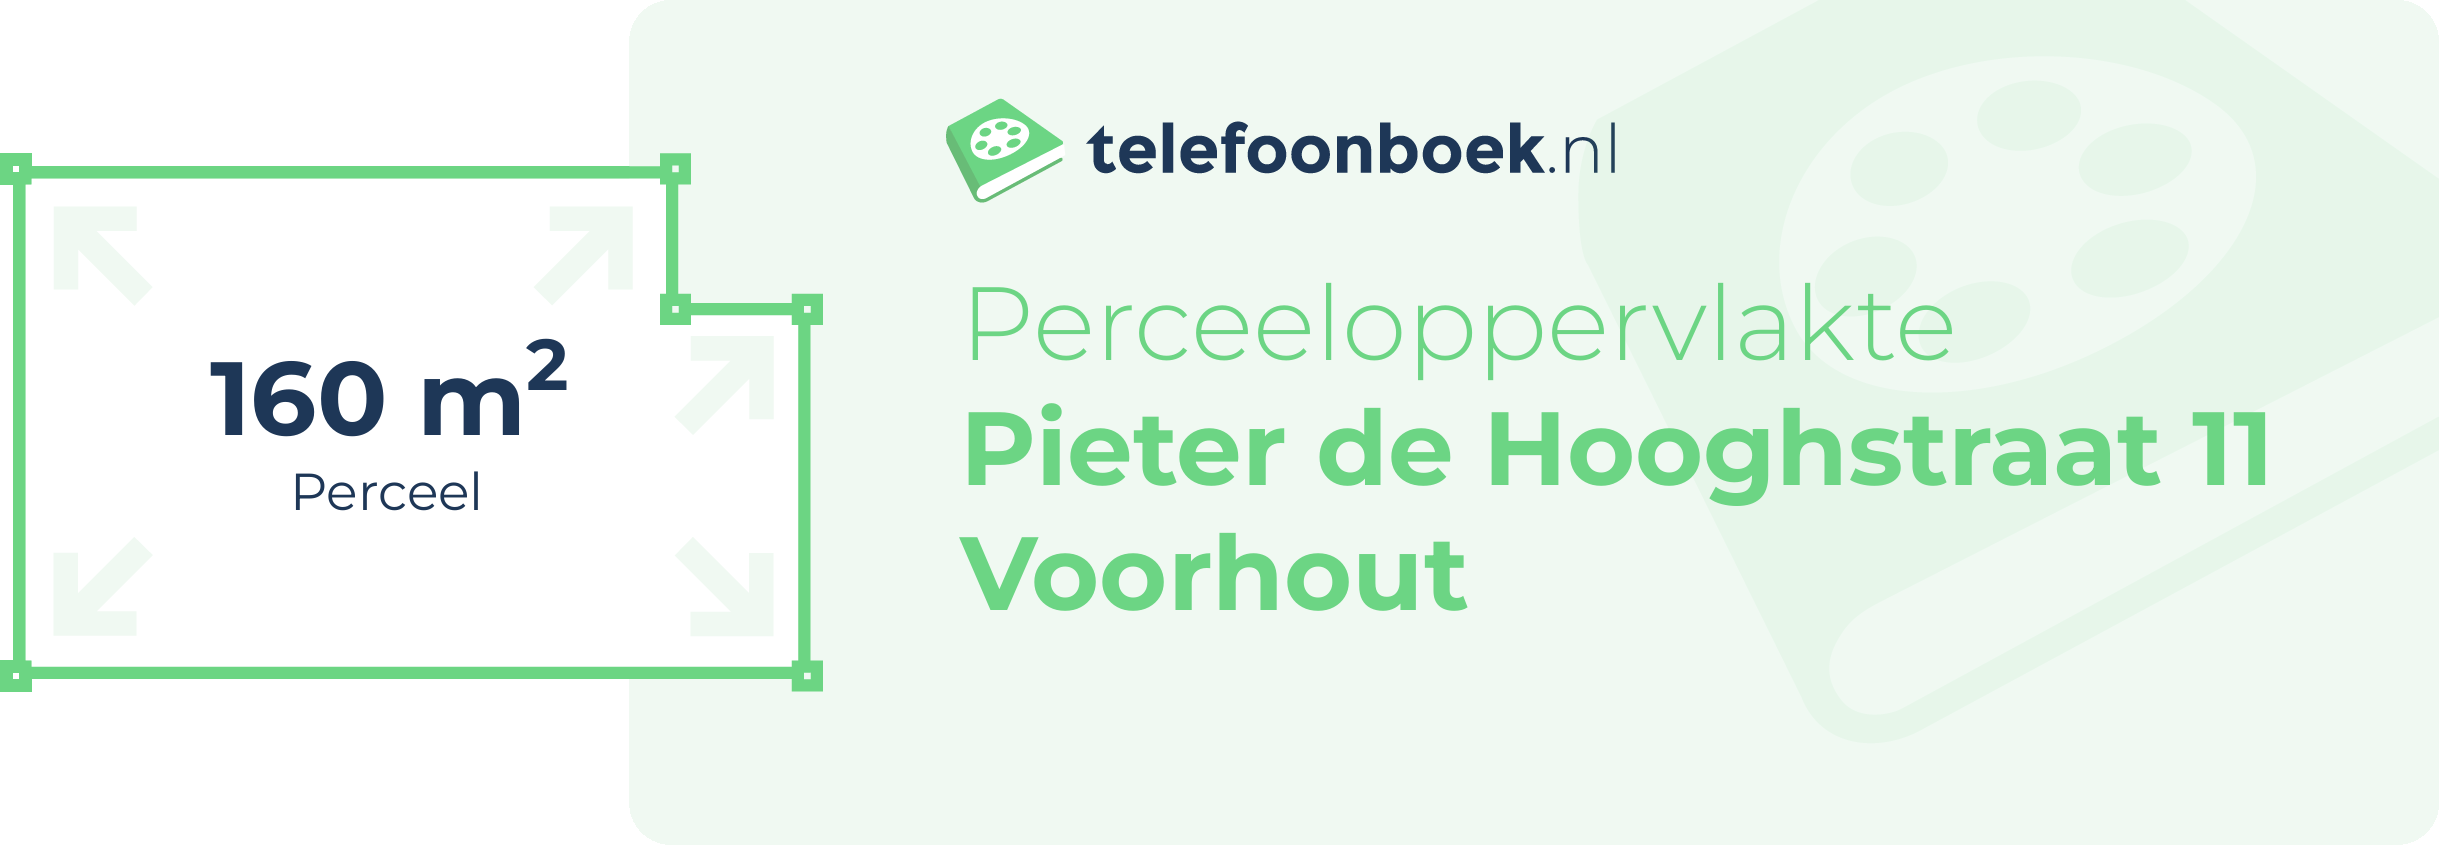 Perceeloppervlakte Pieter De Hooghstraat 11 Voorhout